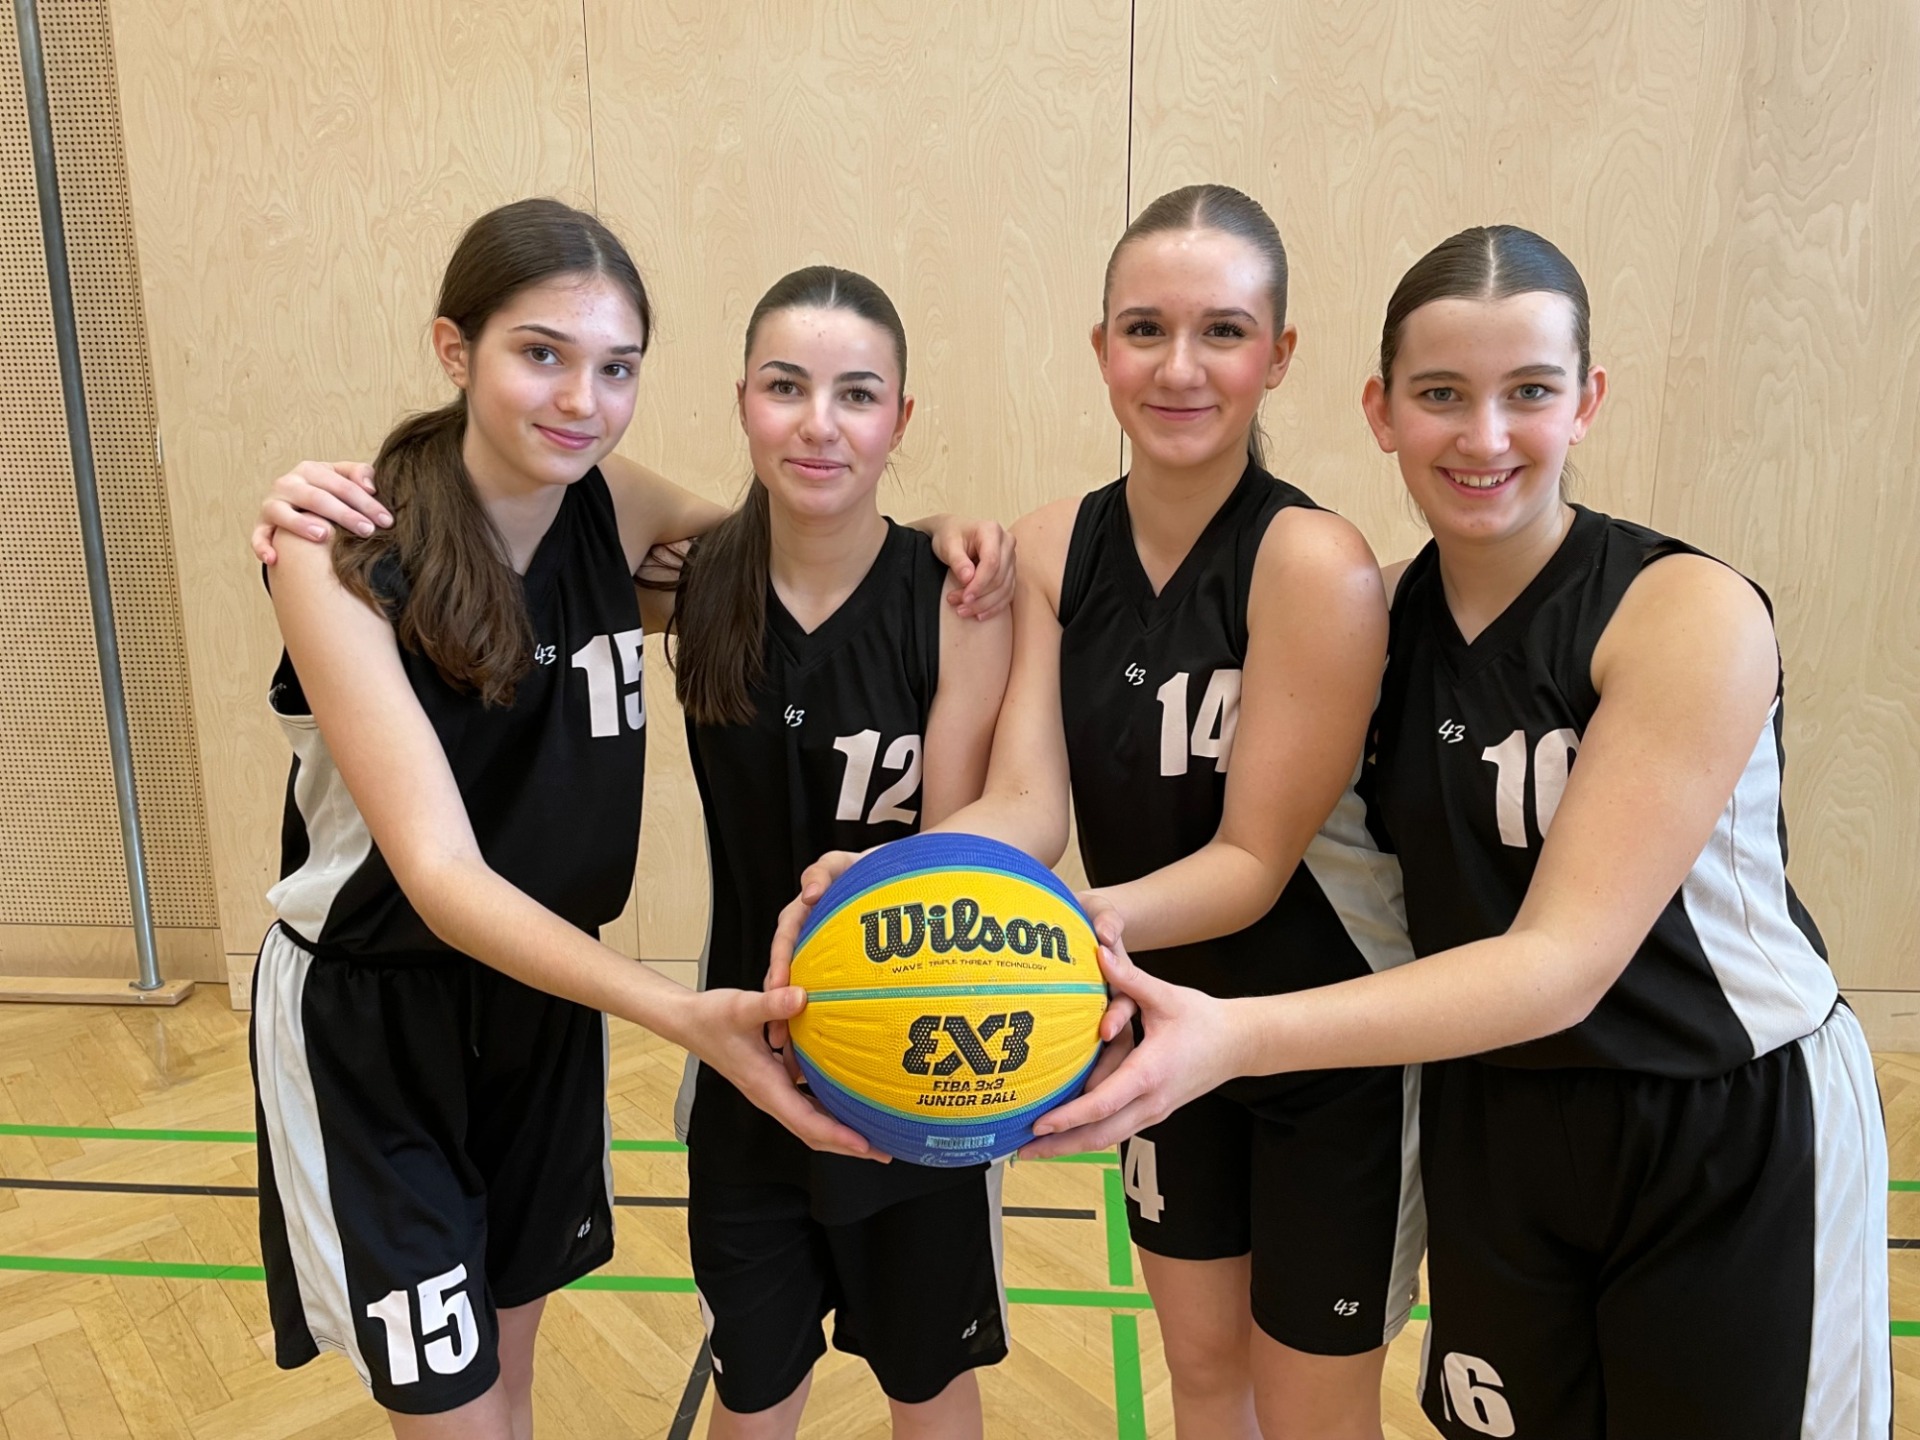 Das Aushängeschild in Sachen 3x3, die 4a-Mädchen der Sportmittelschule Rankweil-West:

Julia Mild, Ilena Bechtold, Jessica Rhomberg und Marie Moosbrugger